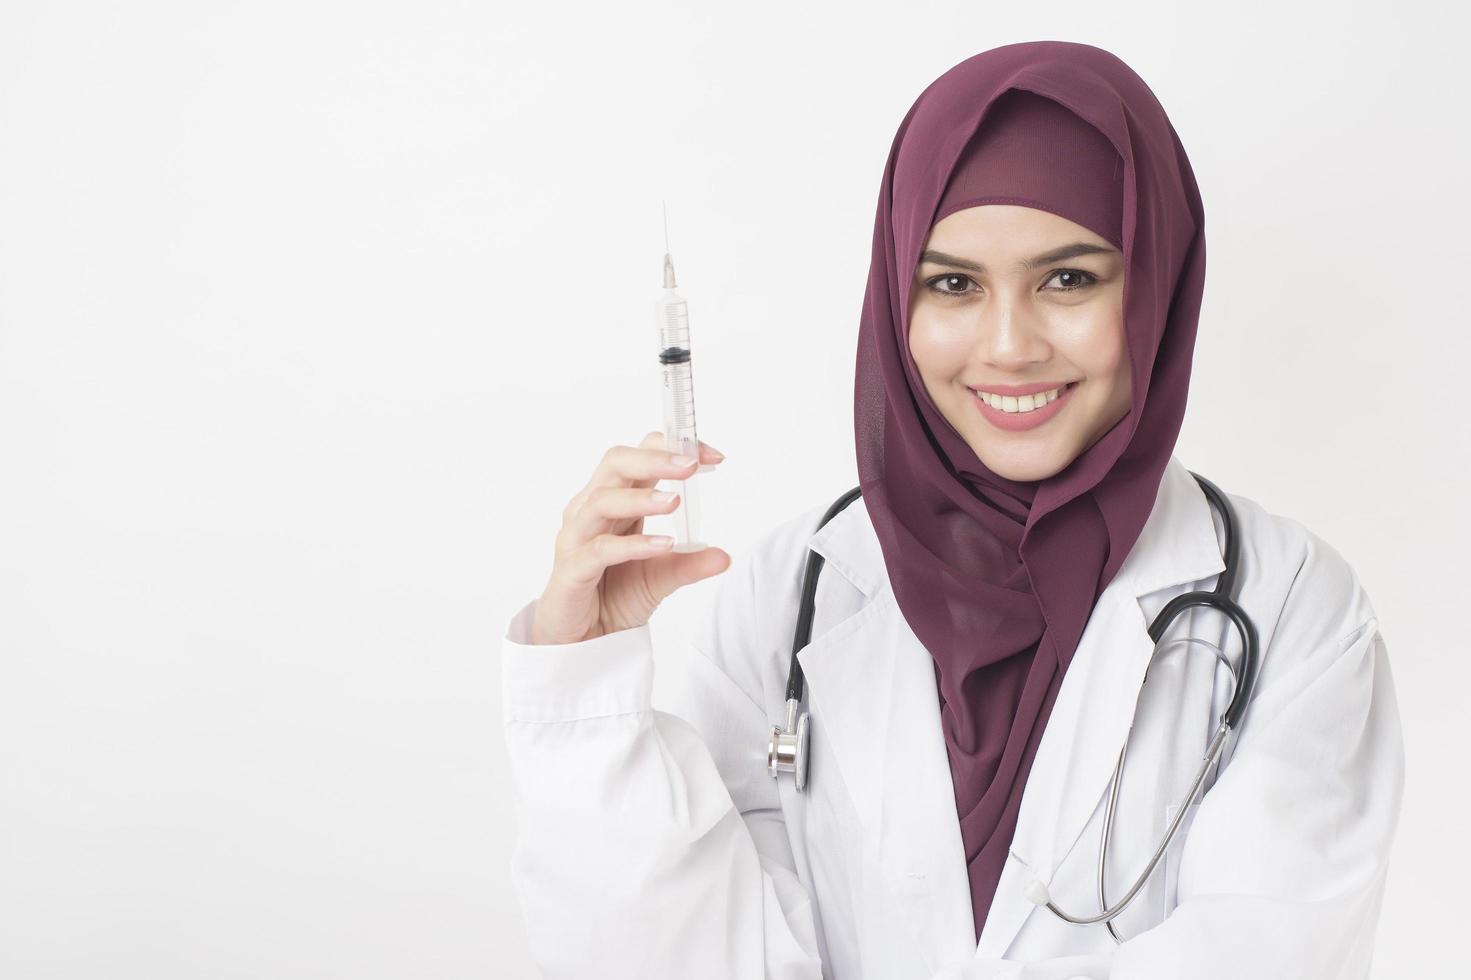 bella donna medico con hijab sta tenendo la siringa su sfondo bianco foto